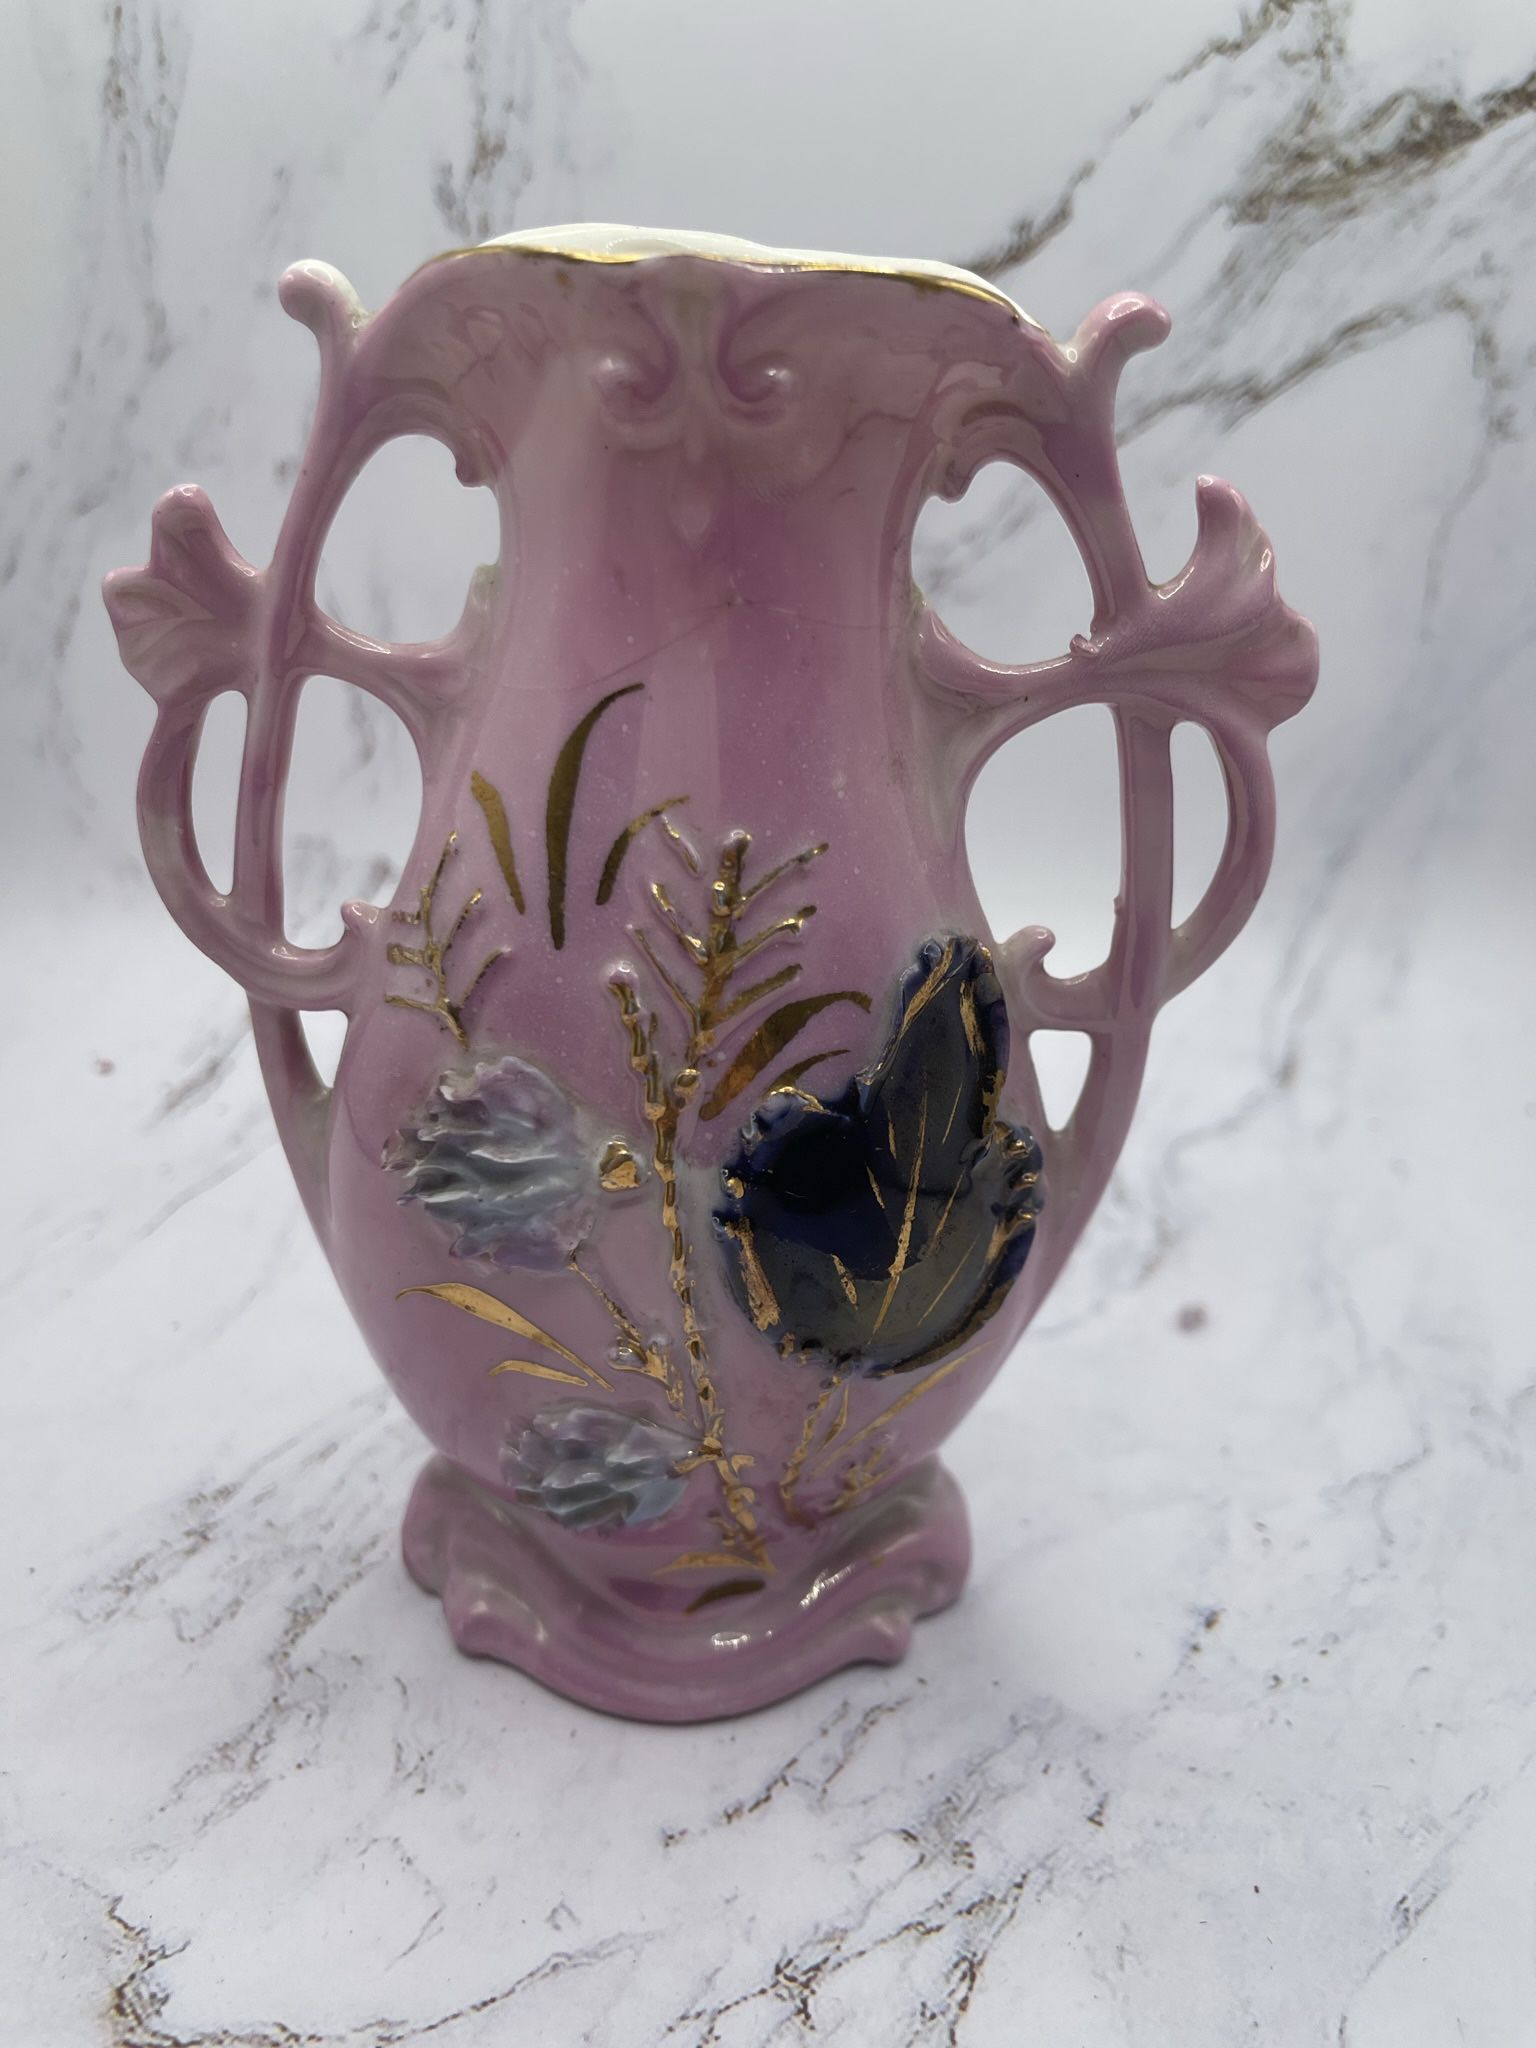 Vintage Porcelain Souvenir Pink Ornate Vase Taunton Mass Made In Germany